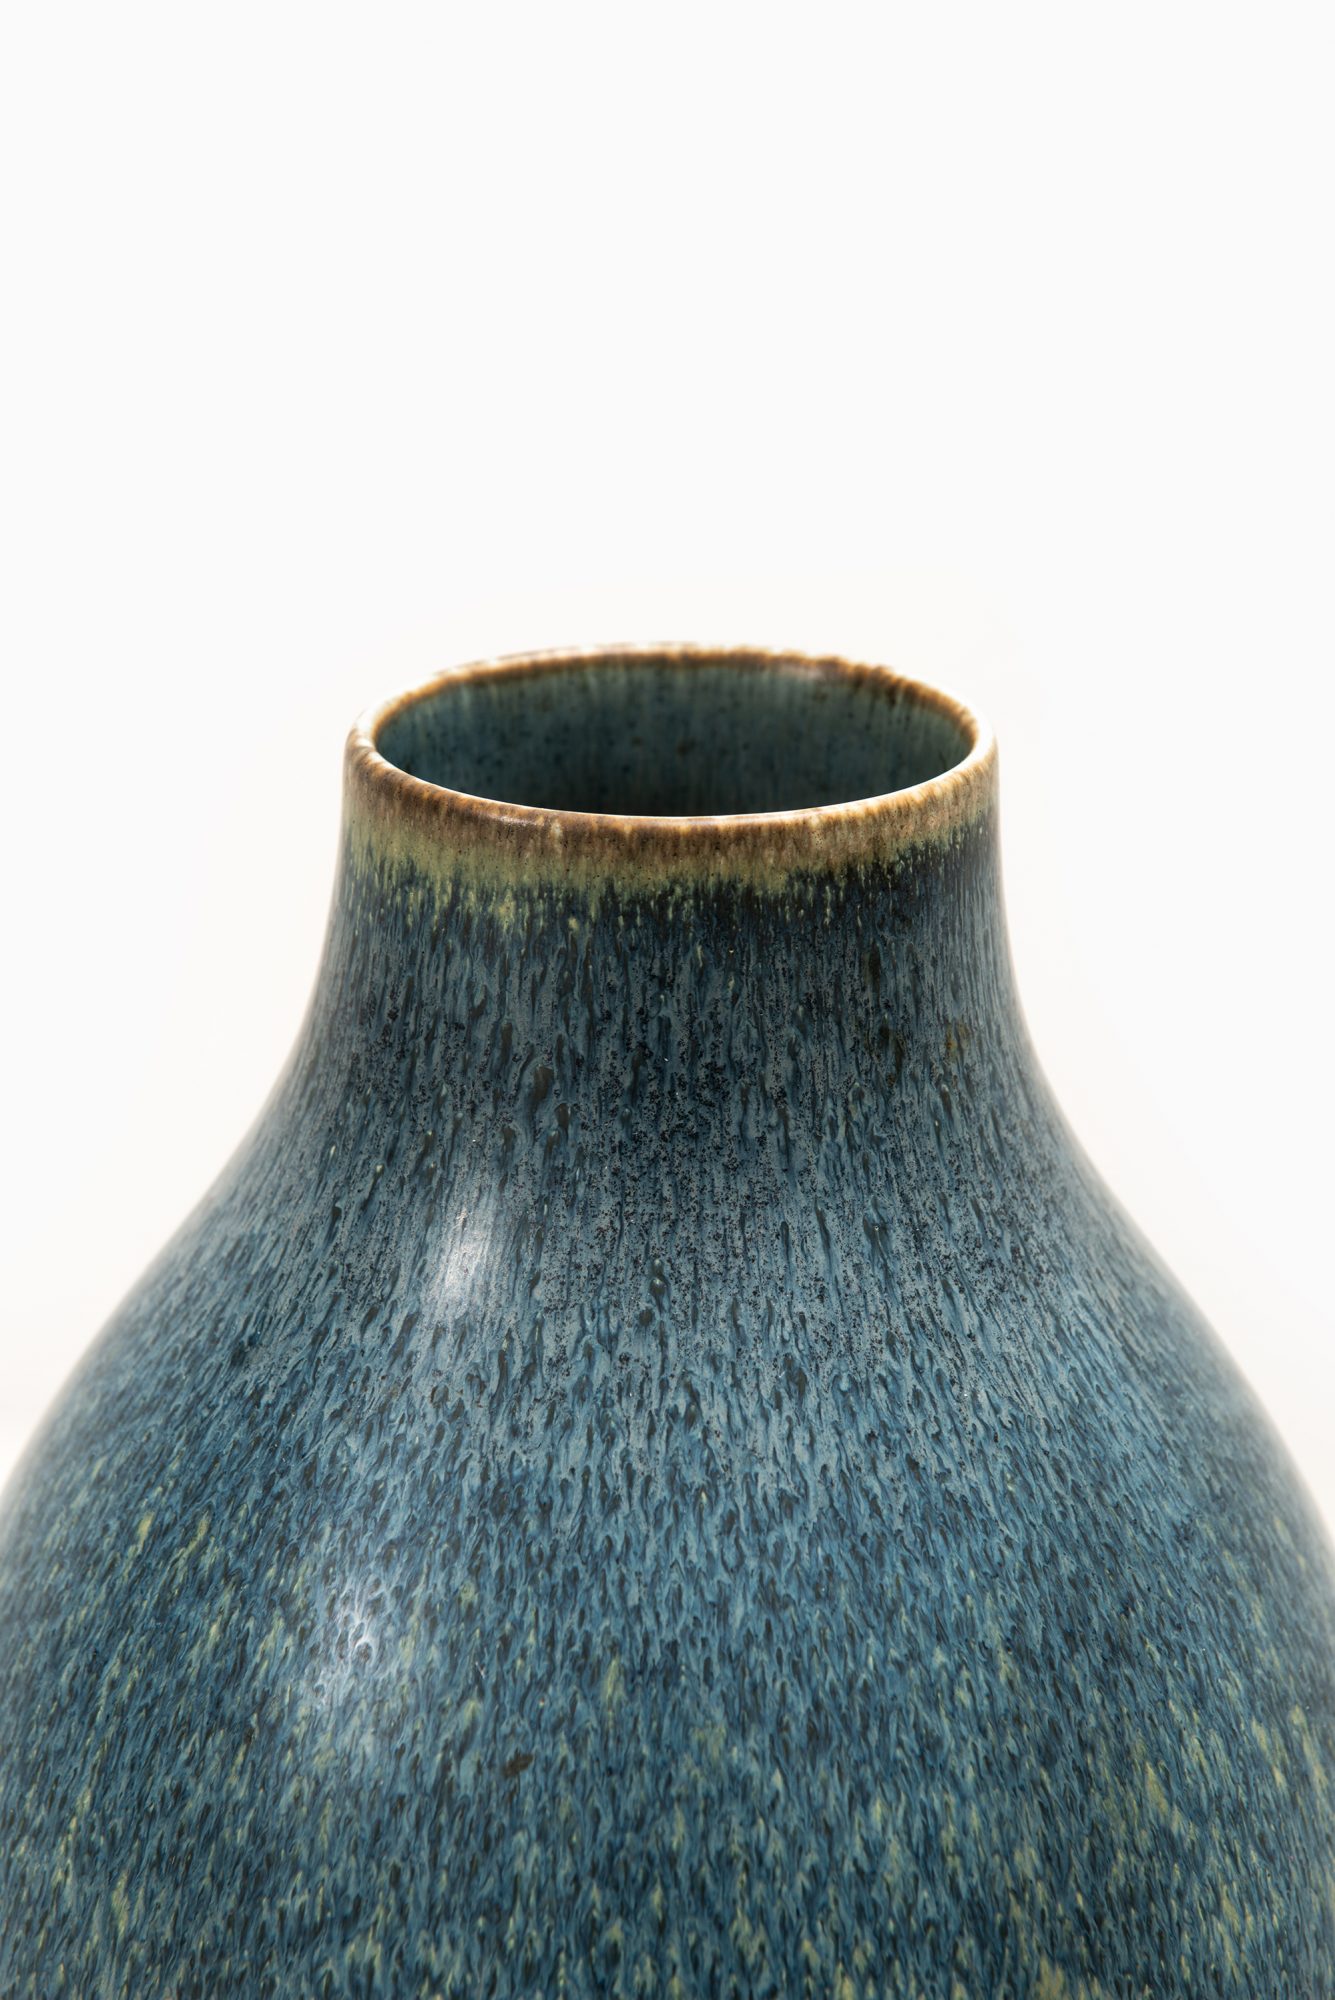 Carl-Harry Stålhane ceramic floor vase by Rörstrand at Studio Schalling